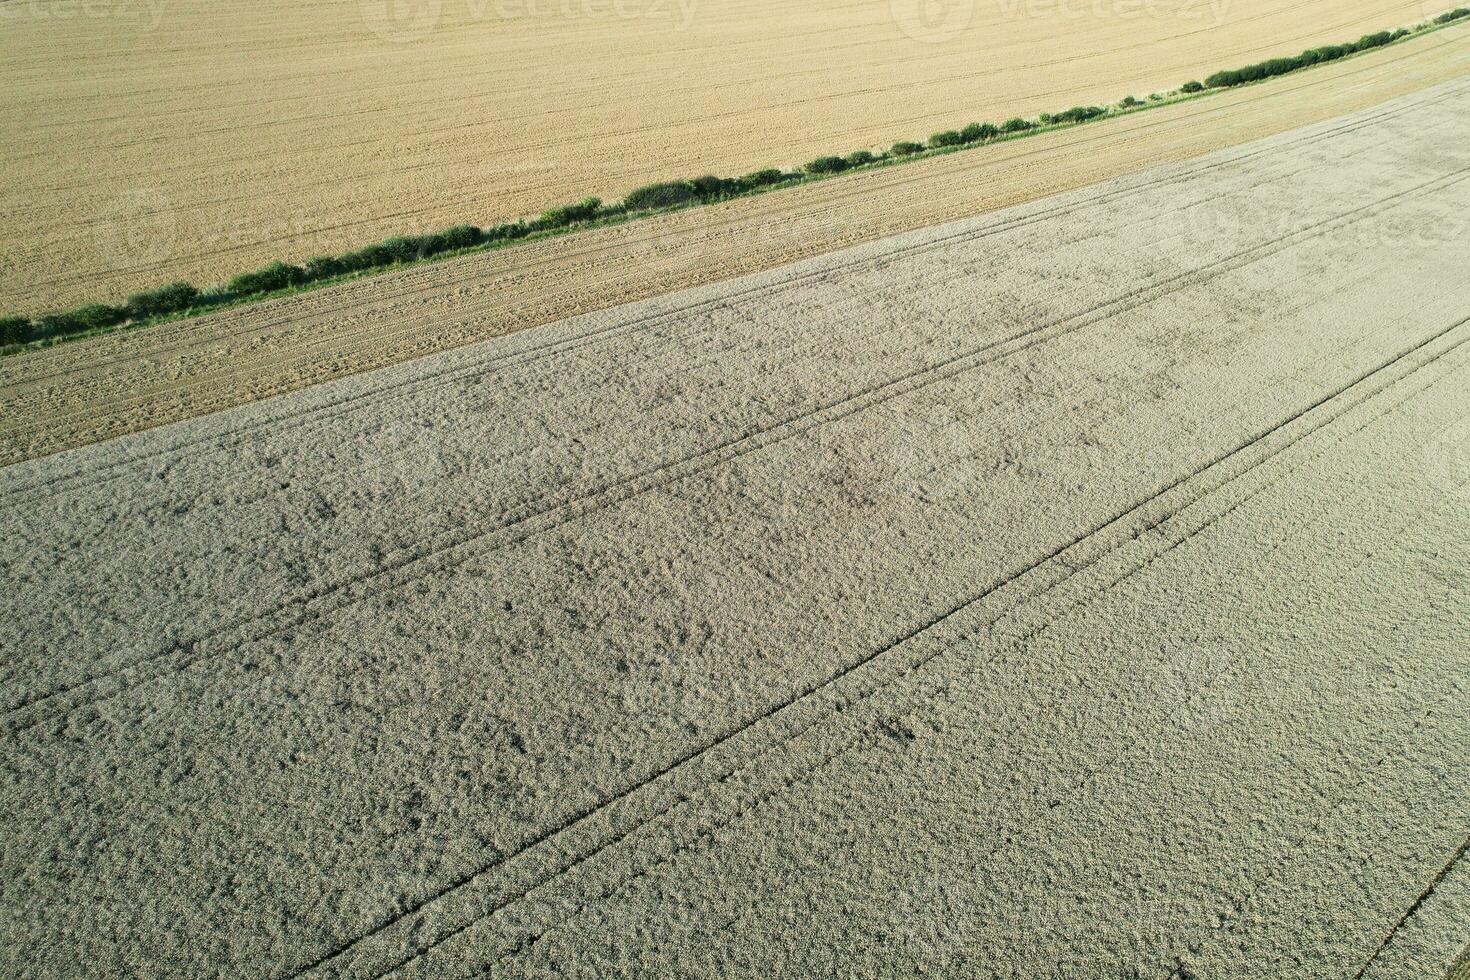 haute angle métrage de Britanique agricole fermes à campagne paysage proche luton ville de Angleterre génial Bretagne de Royaume-Uni. métrage a été capturé avec drone caméra sur août 19ème, 2023 photo